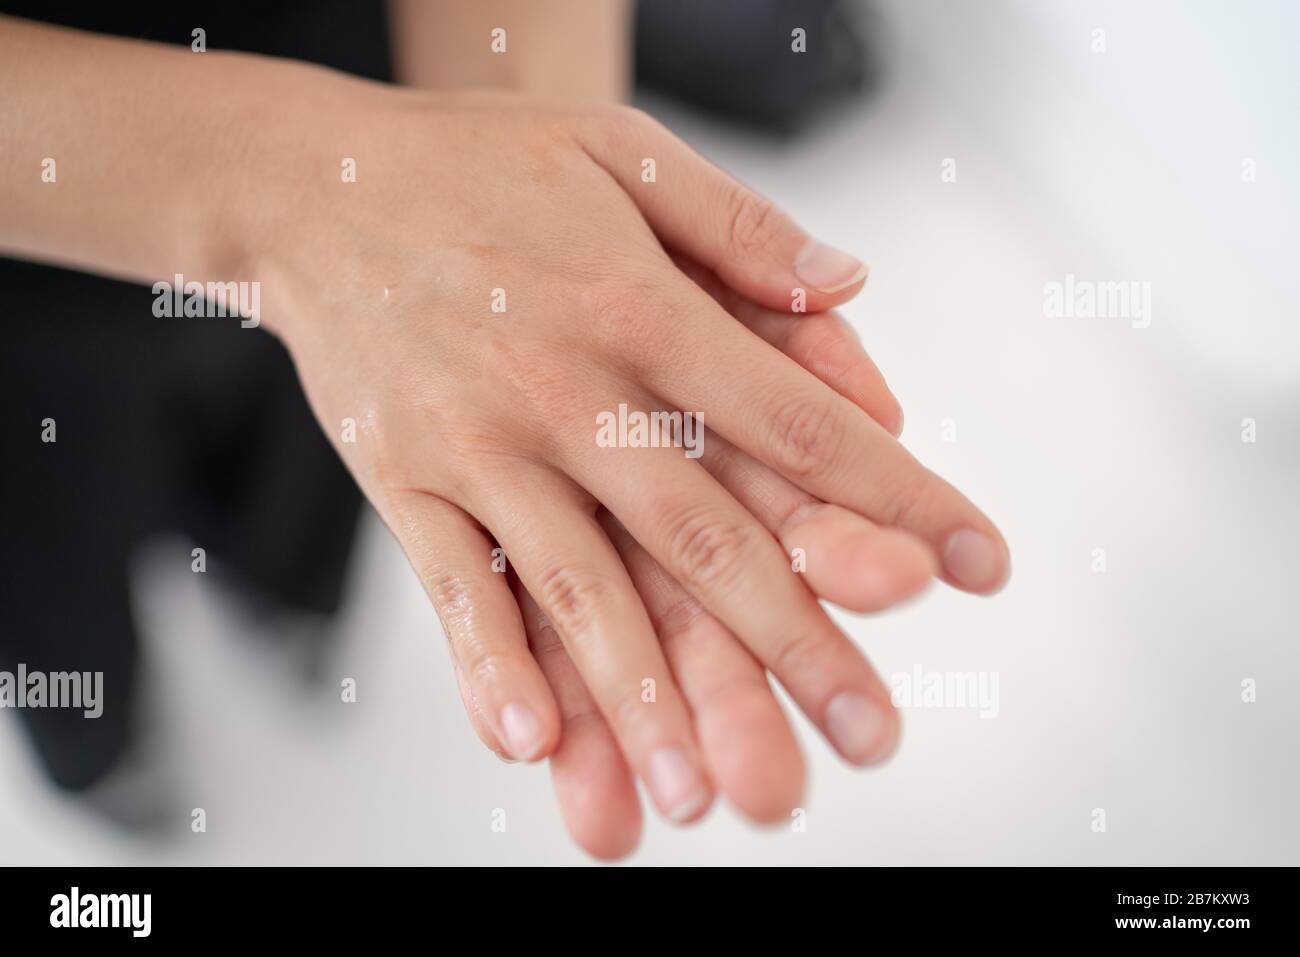 Désinfectant pour les mains Corona virus COVID-19 prévention gel d'alcool frotter pour la prévention de l'hygiène des mains. Femme frottant du savon dans les paumes pour nettoyer les mains. Banque D'Images